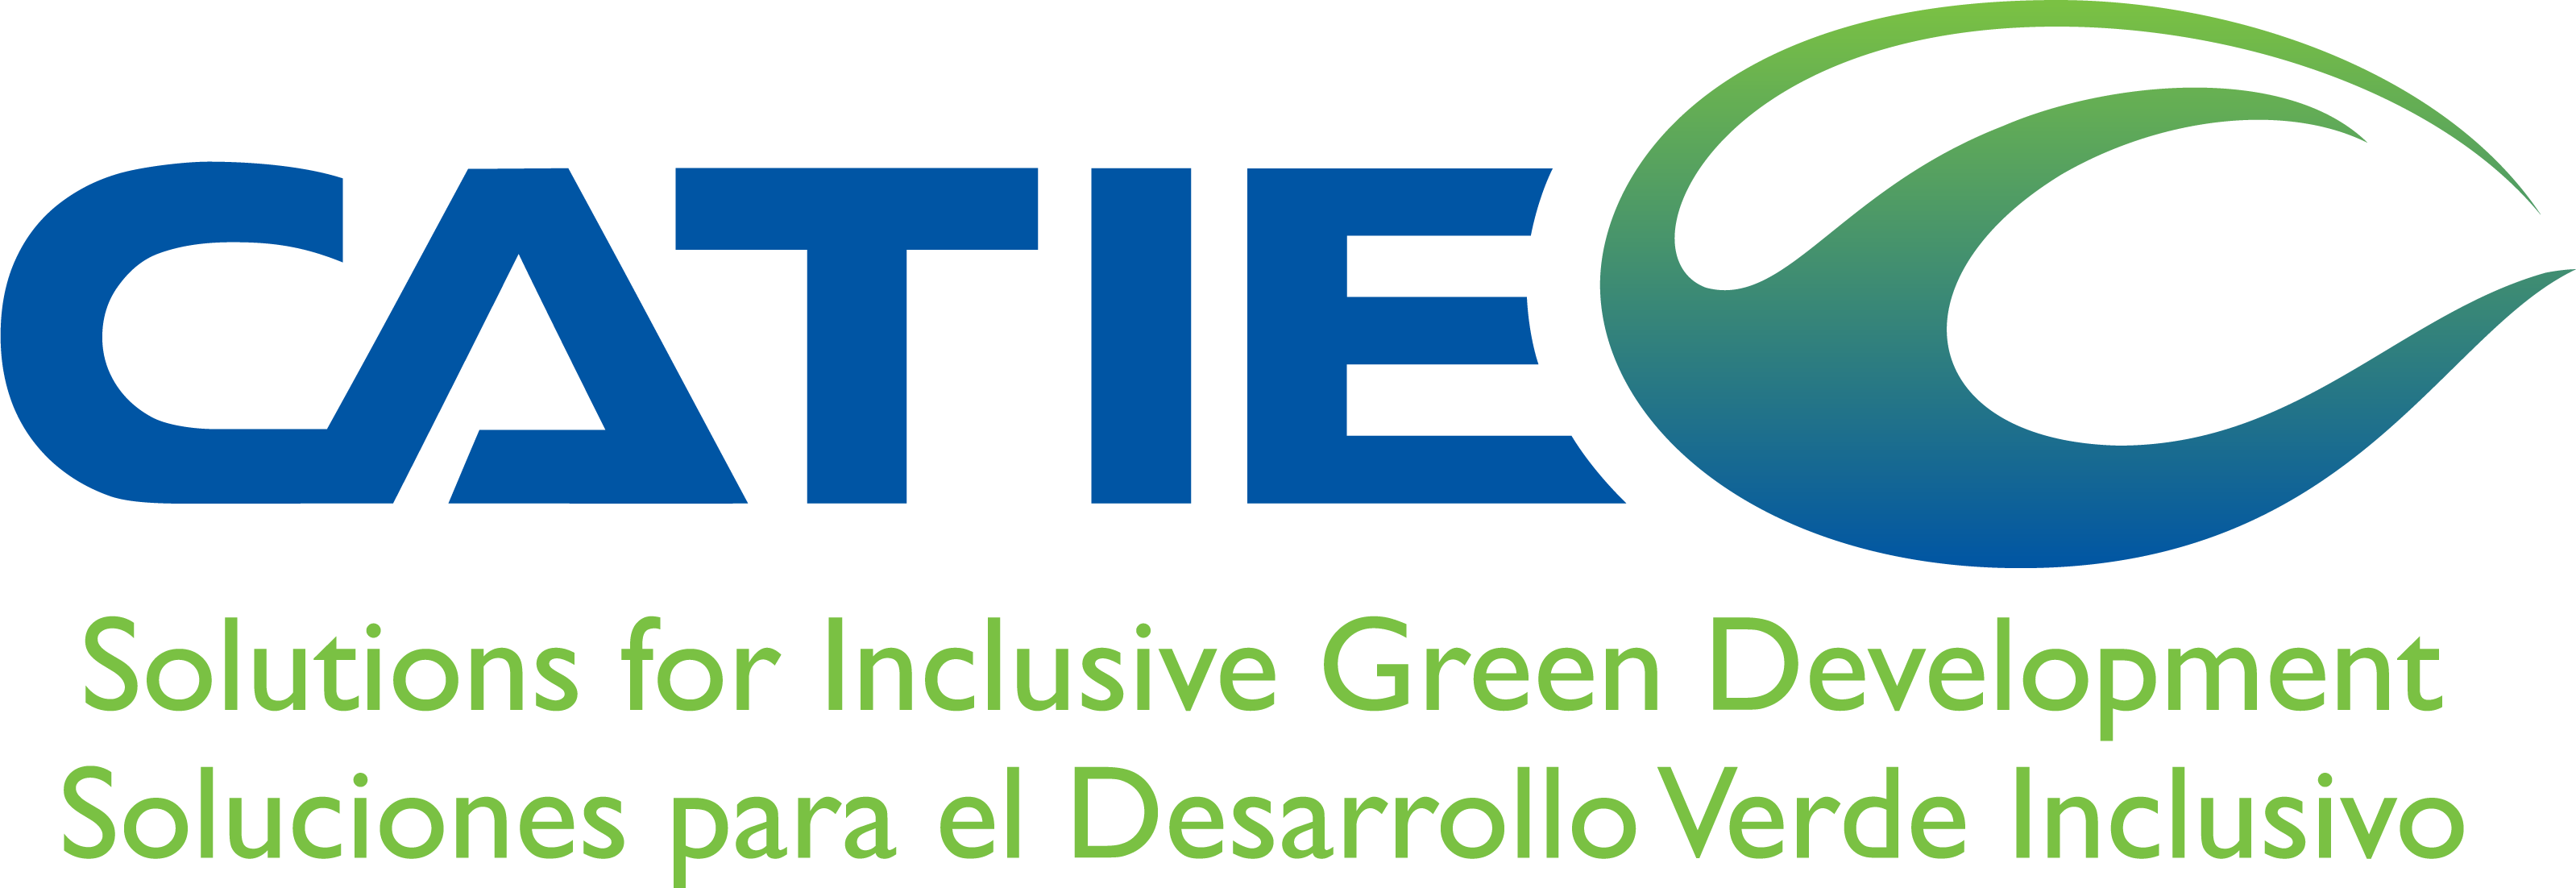 Logo CATIE verde inclusivo.png